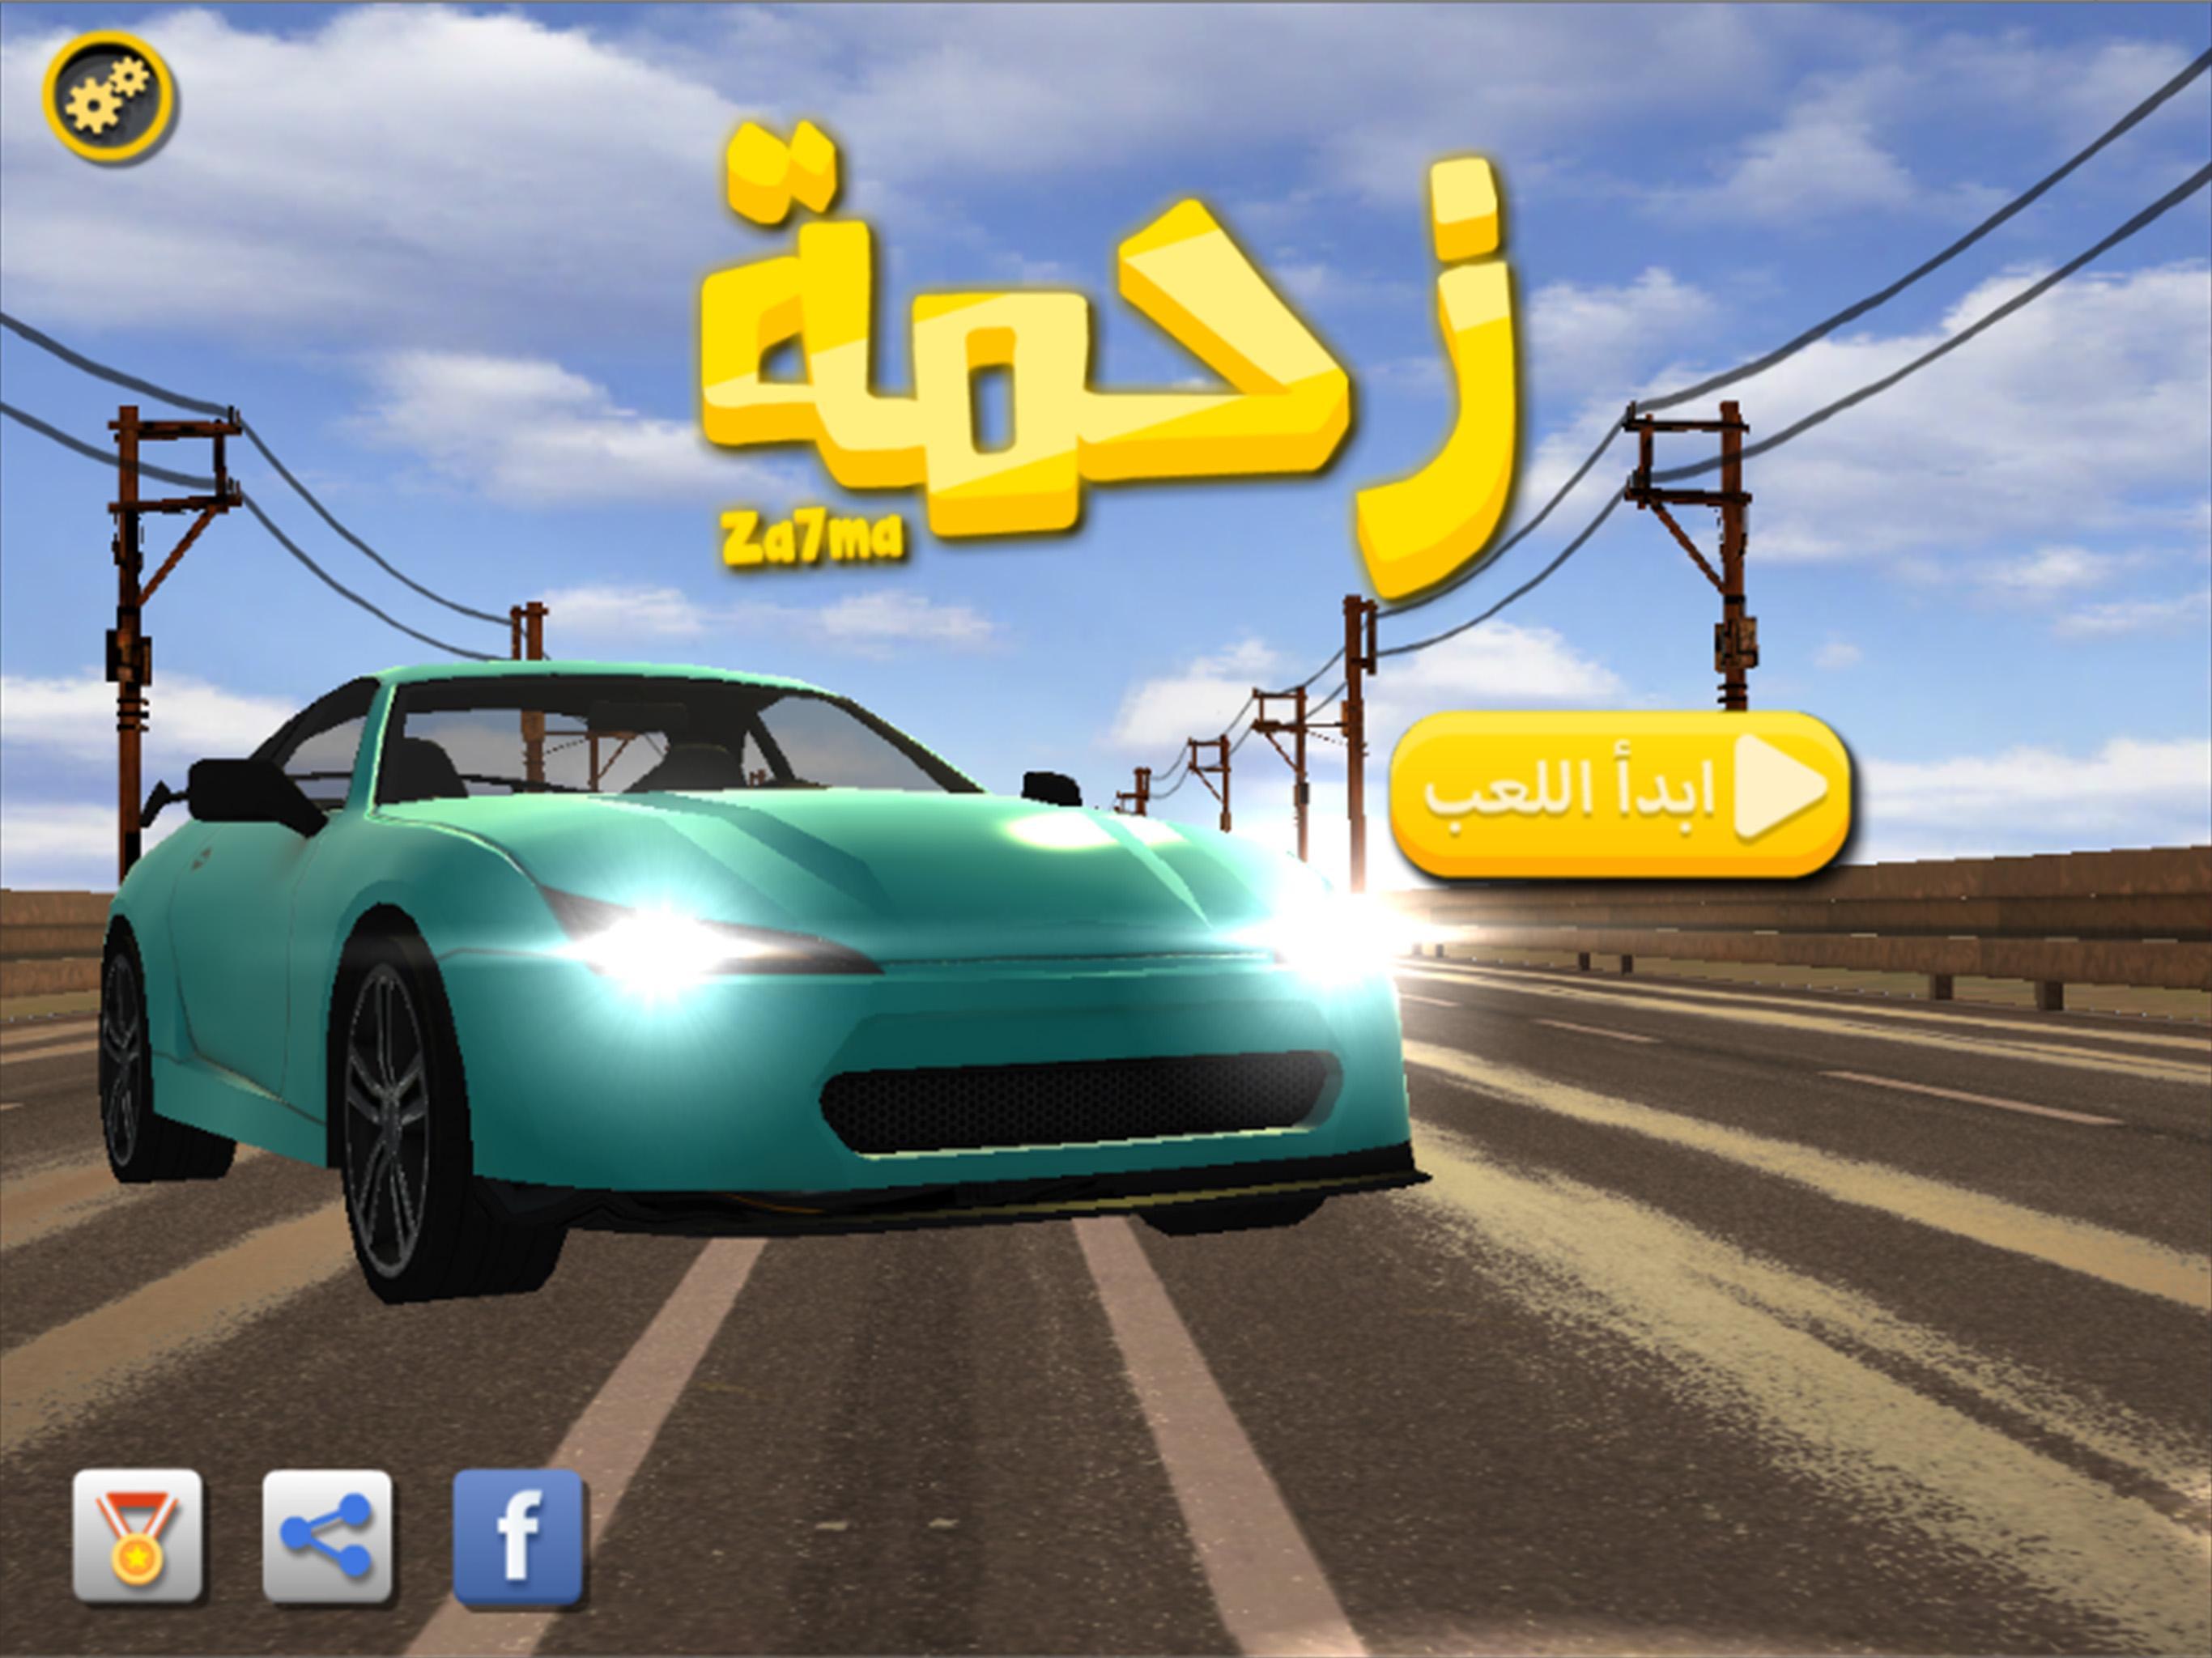 زحمة لعبة سيارات مغامرات عربية for Android - APK Download